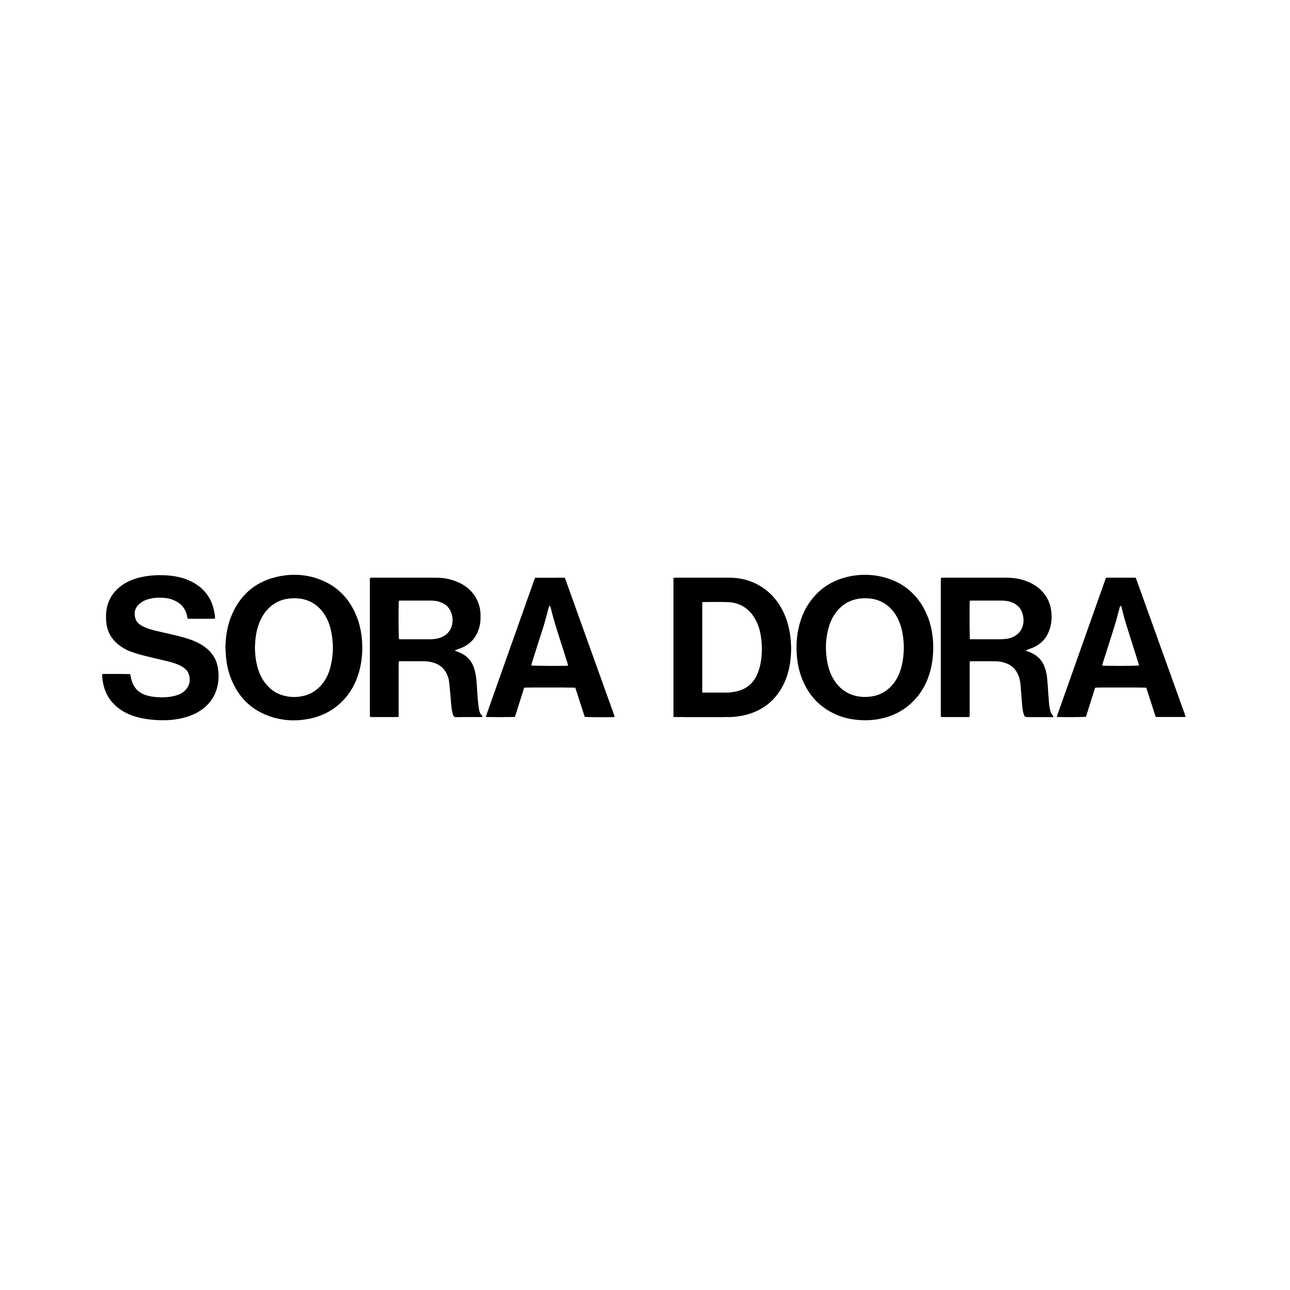 SORADORA-Logo